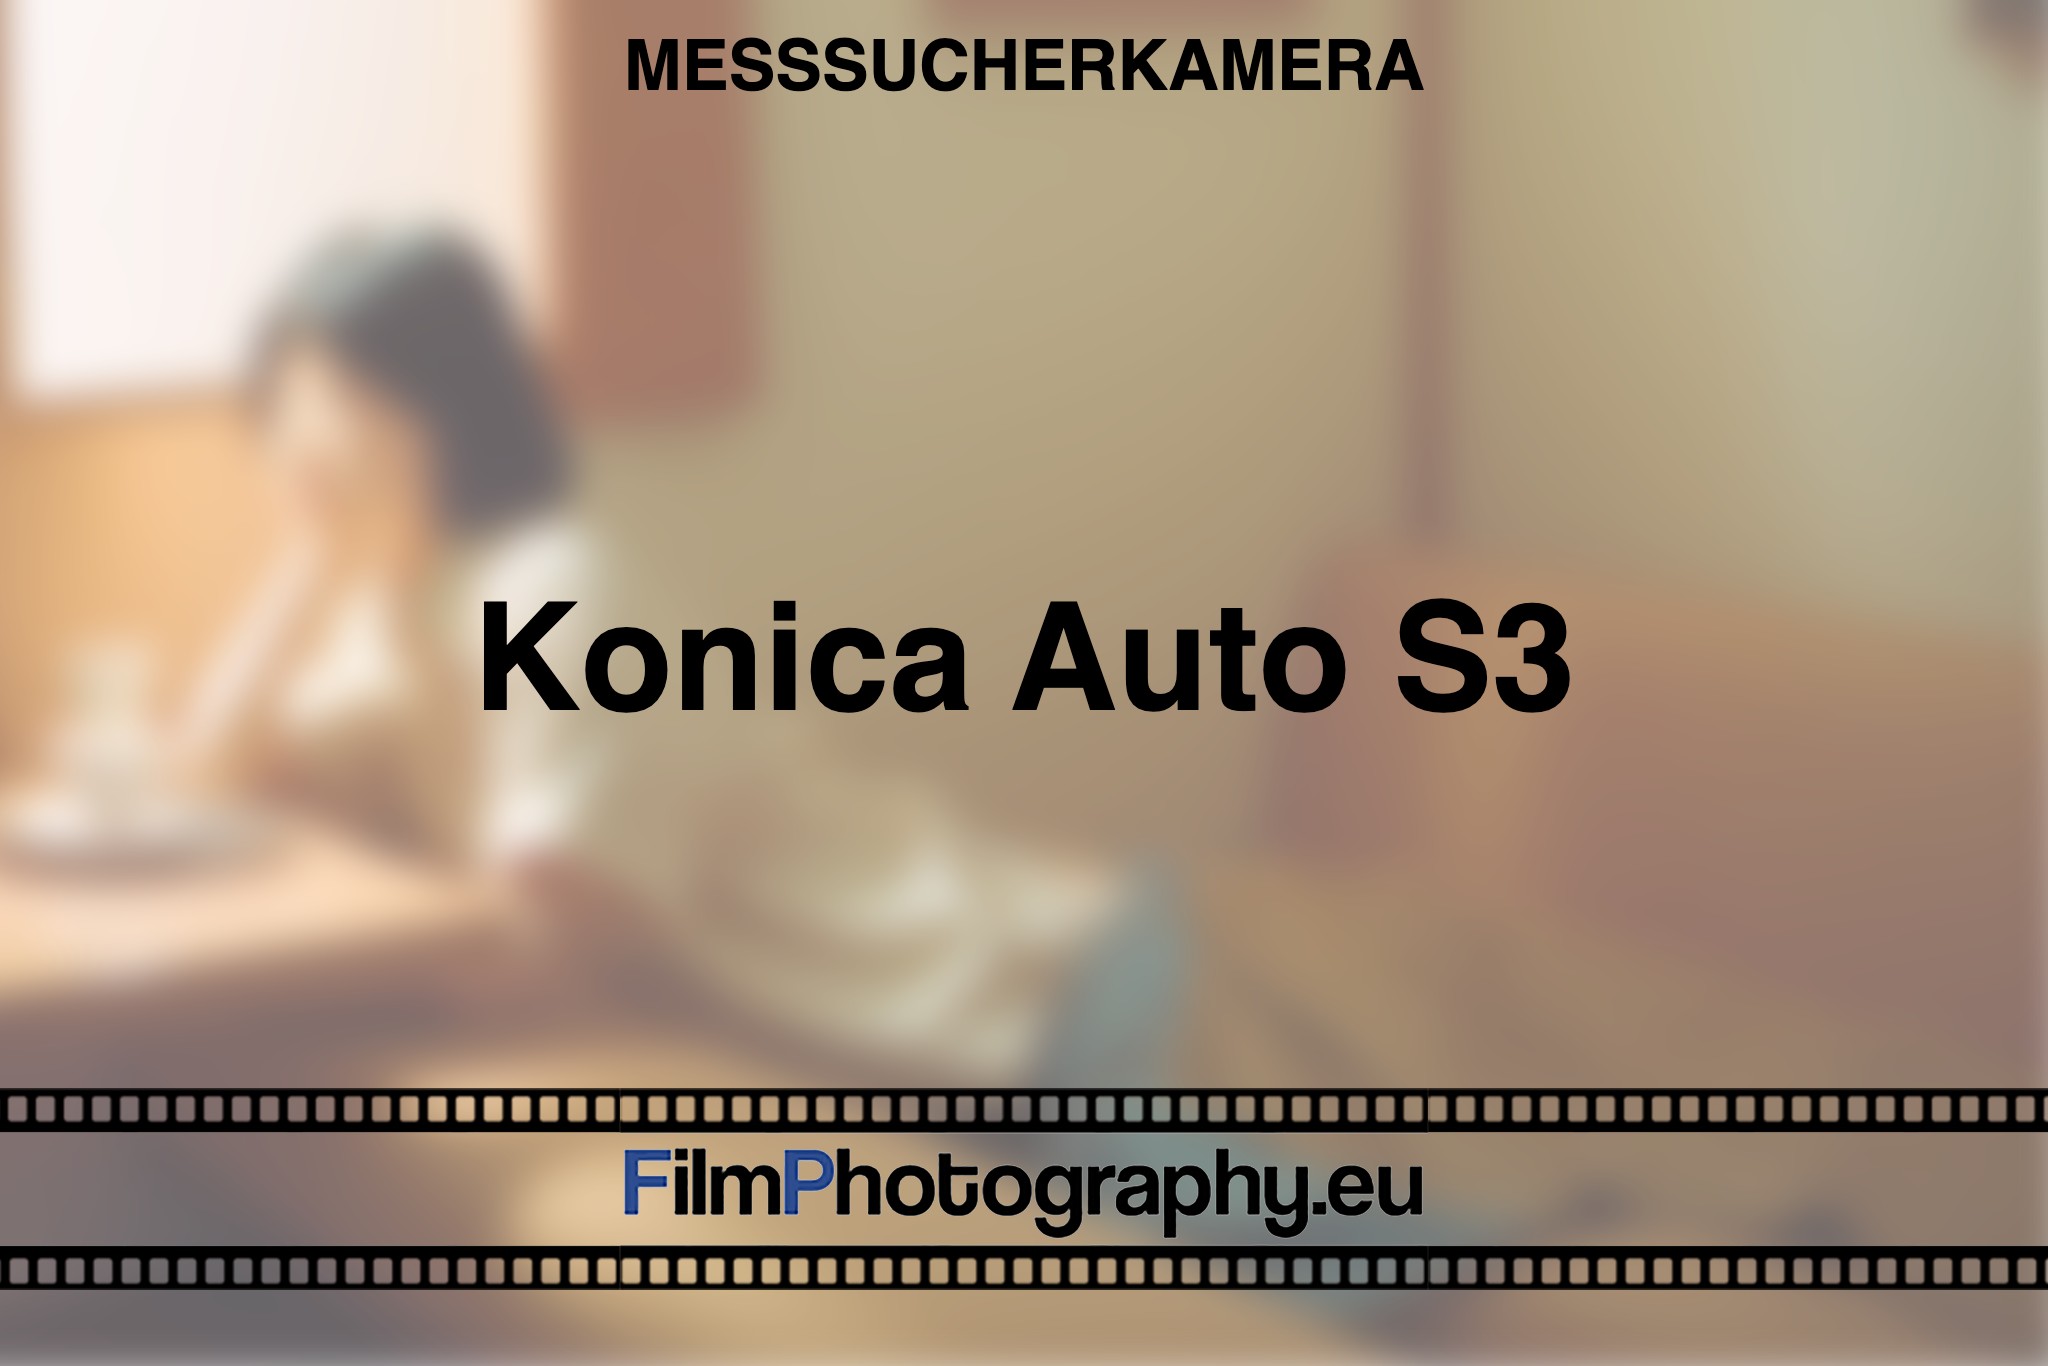 konica-auto-s3-messsucherkamera-bnv